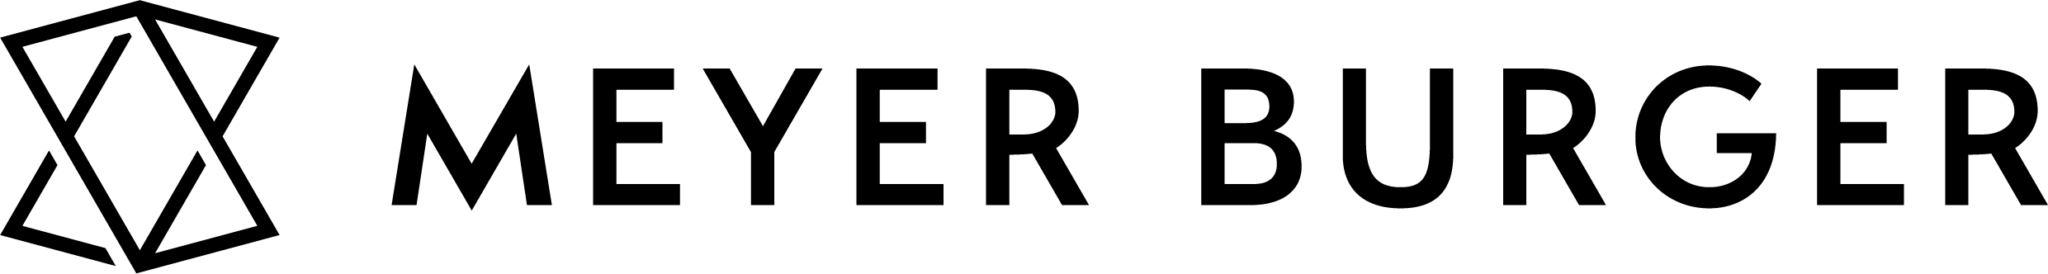 MeyerBurger_LogoBlack_RGB